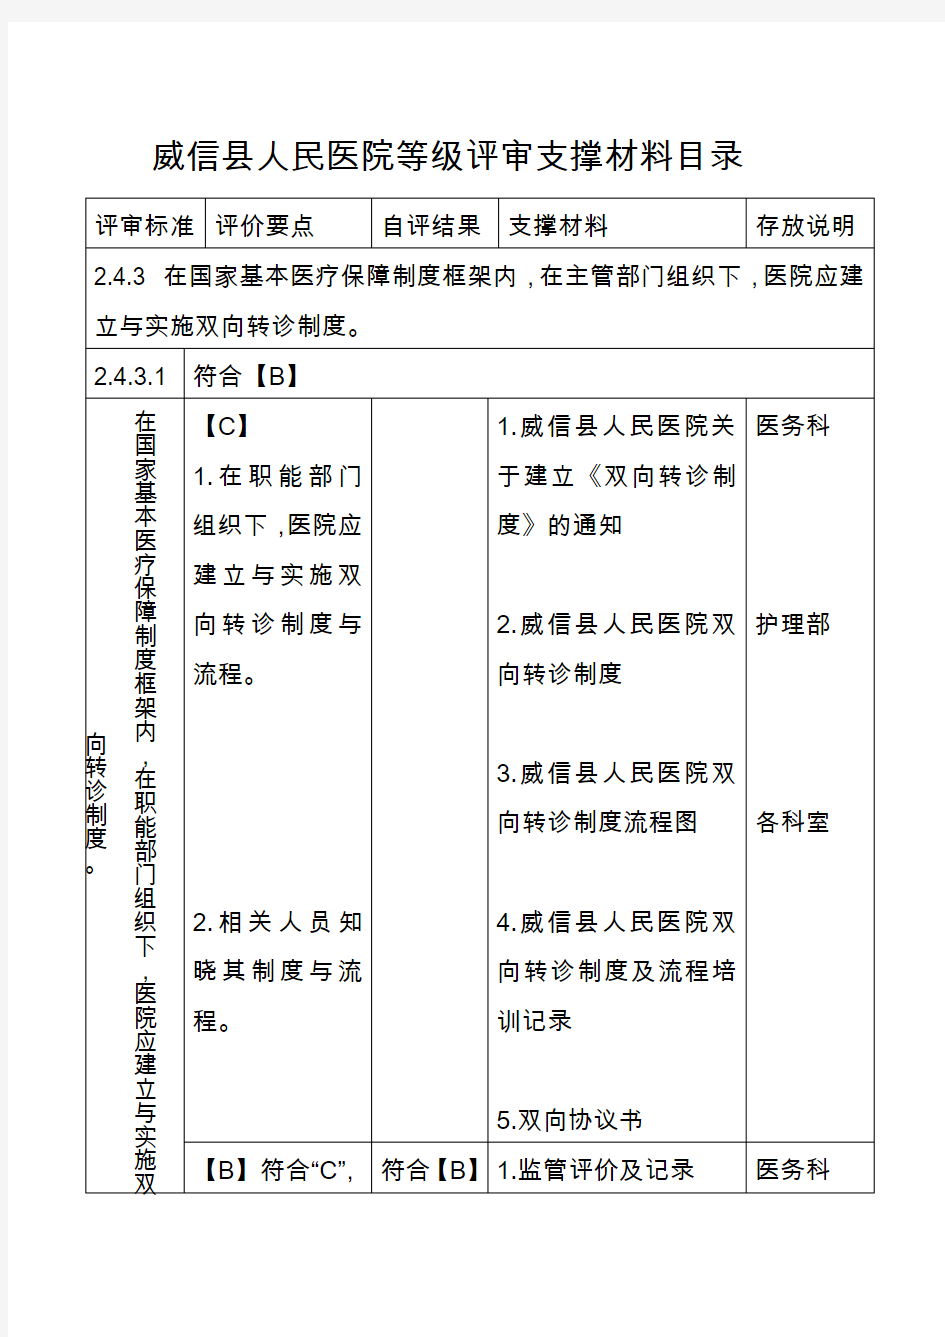 威信县人民医院等级评审支撑材料2.4.3.1